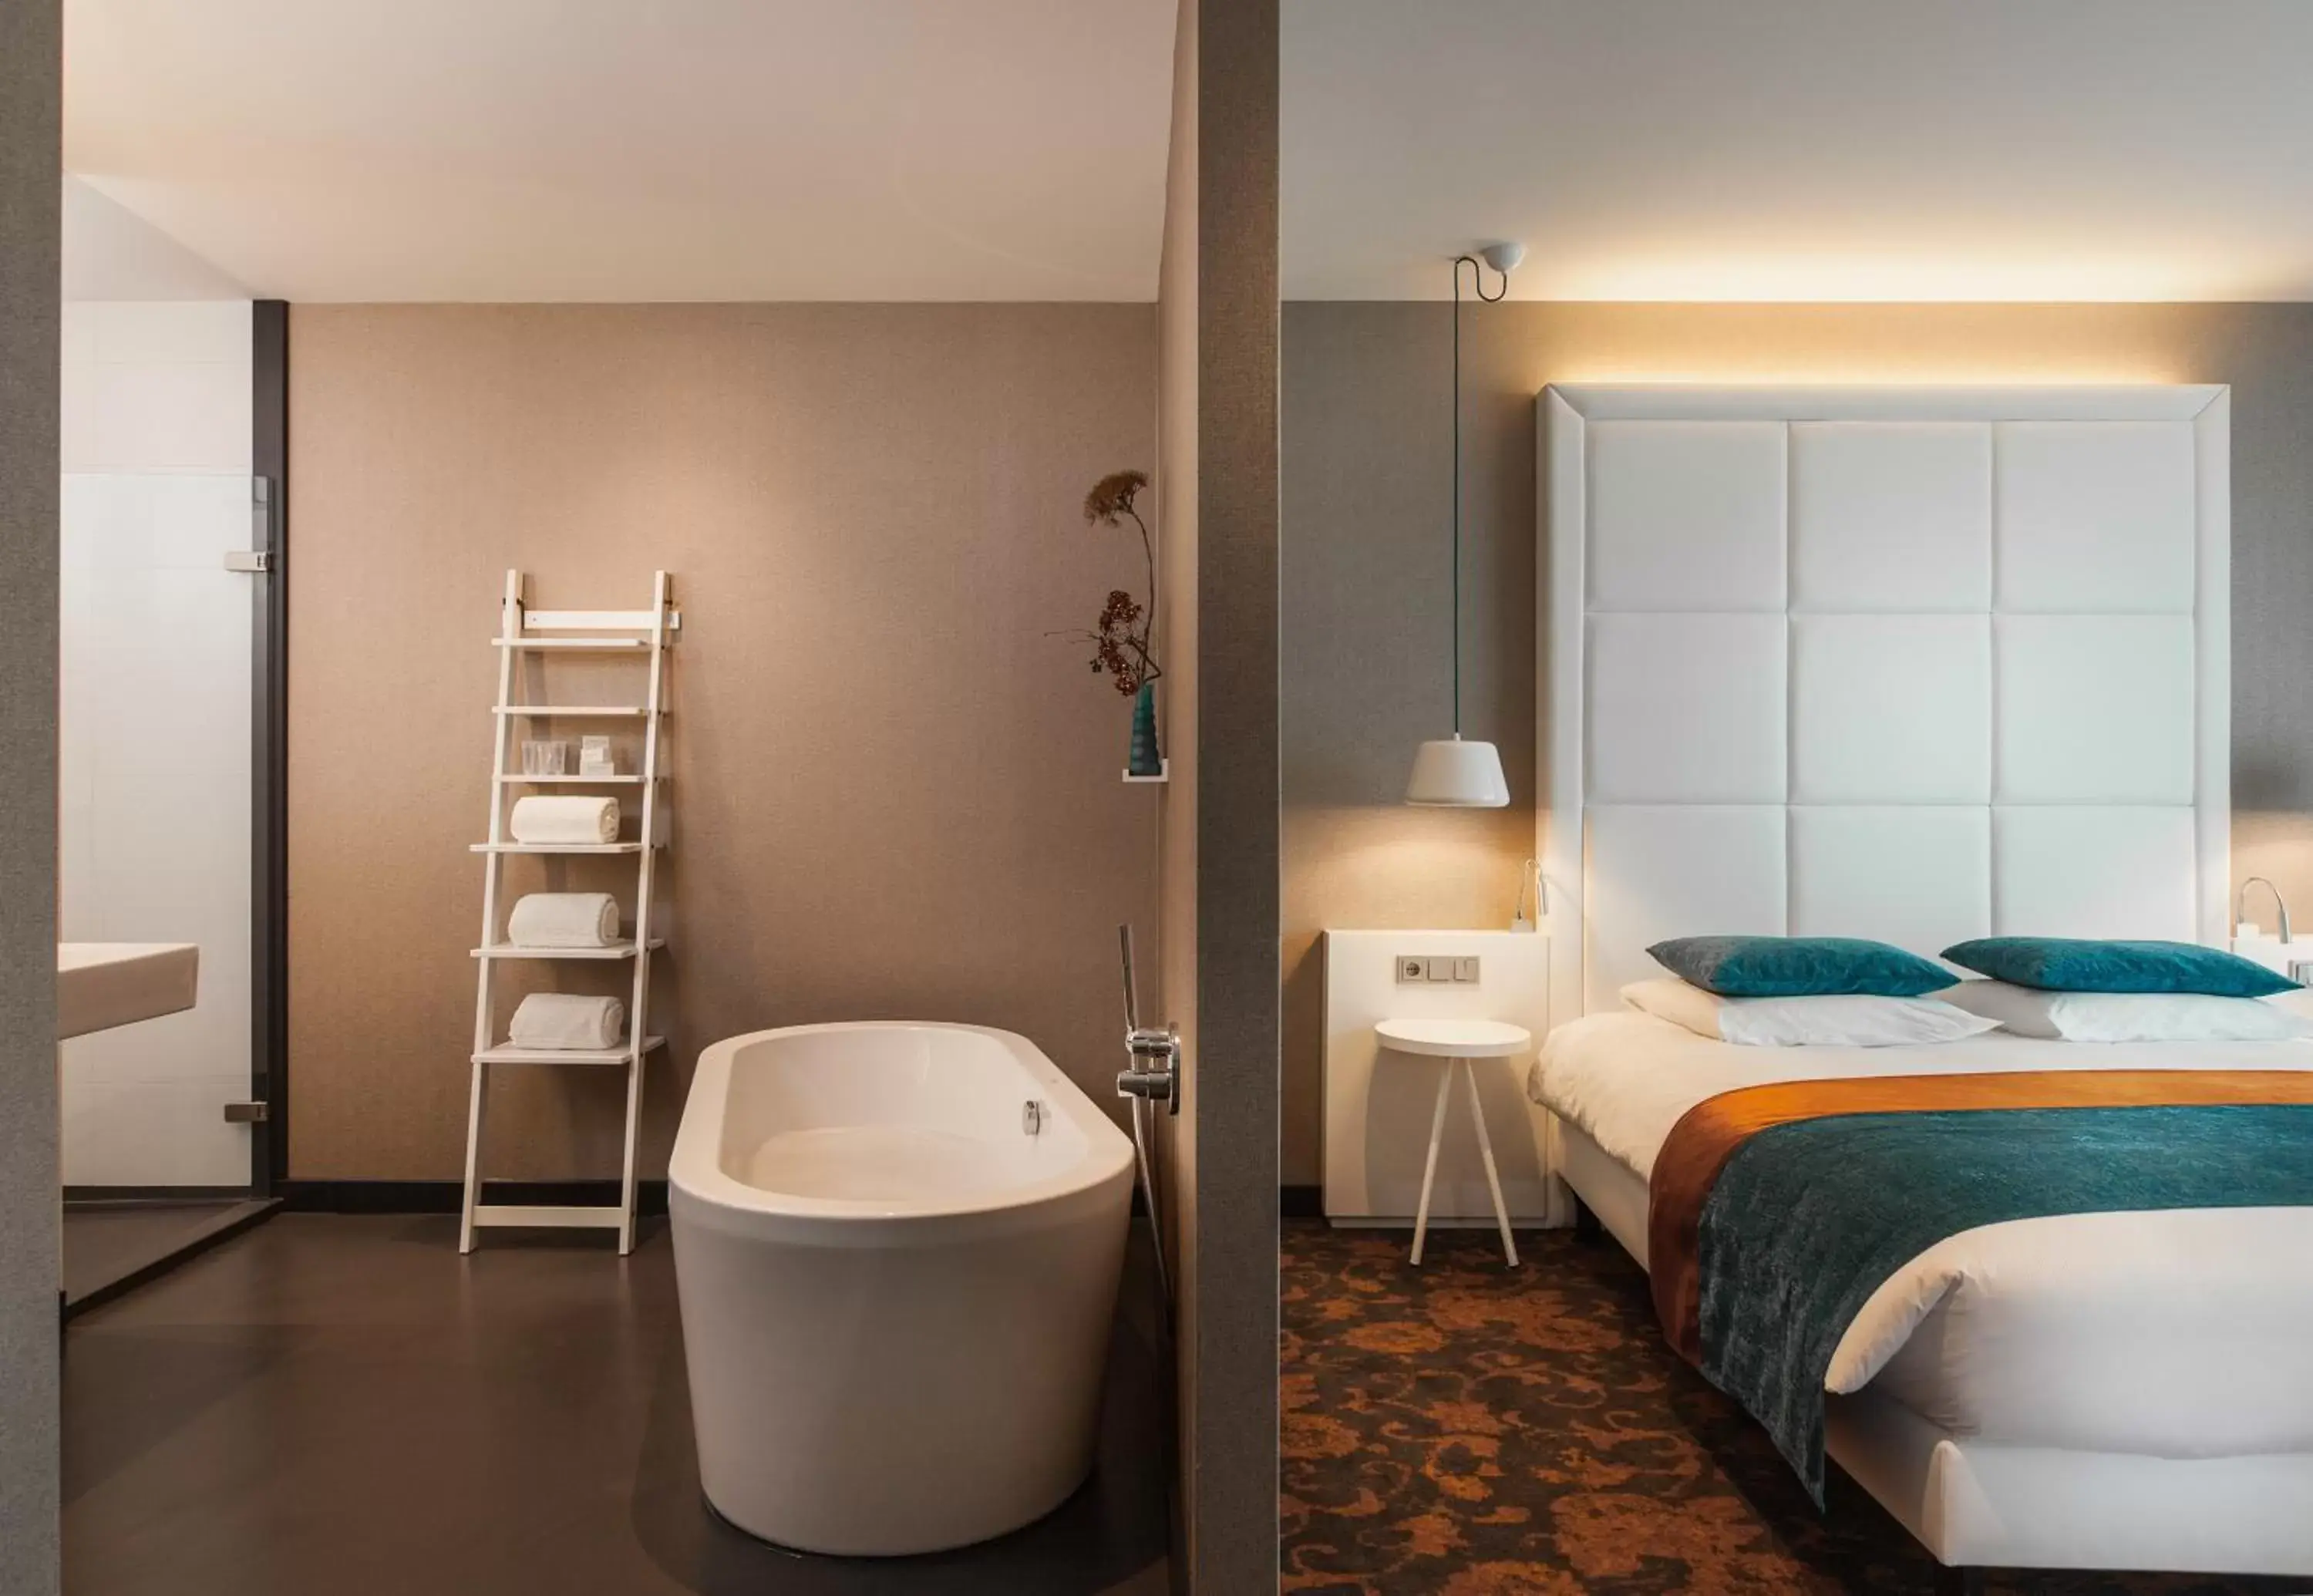 Bed, Bathroom in Van der Valk hotel Veenendaal